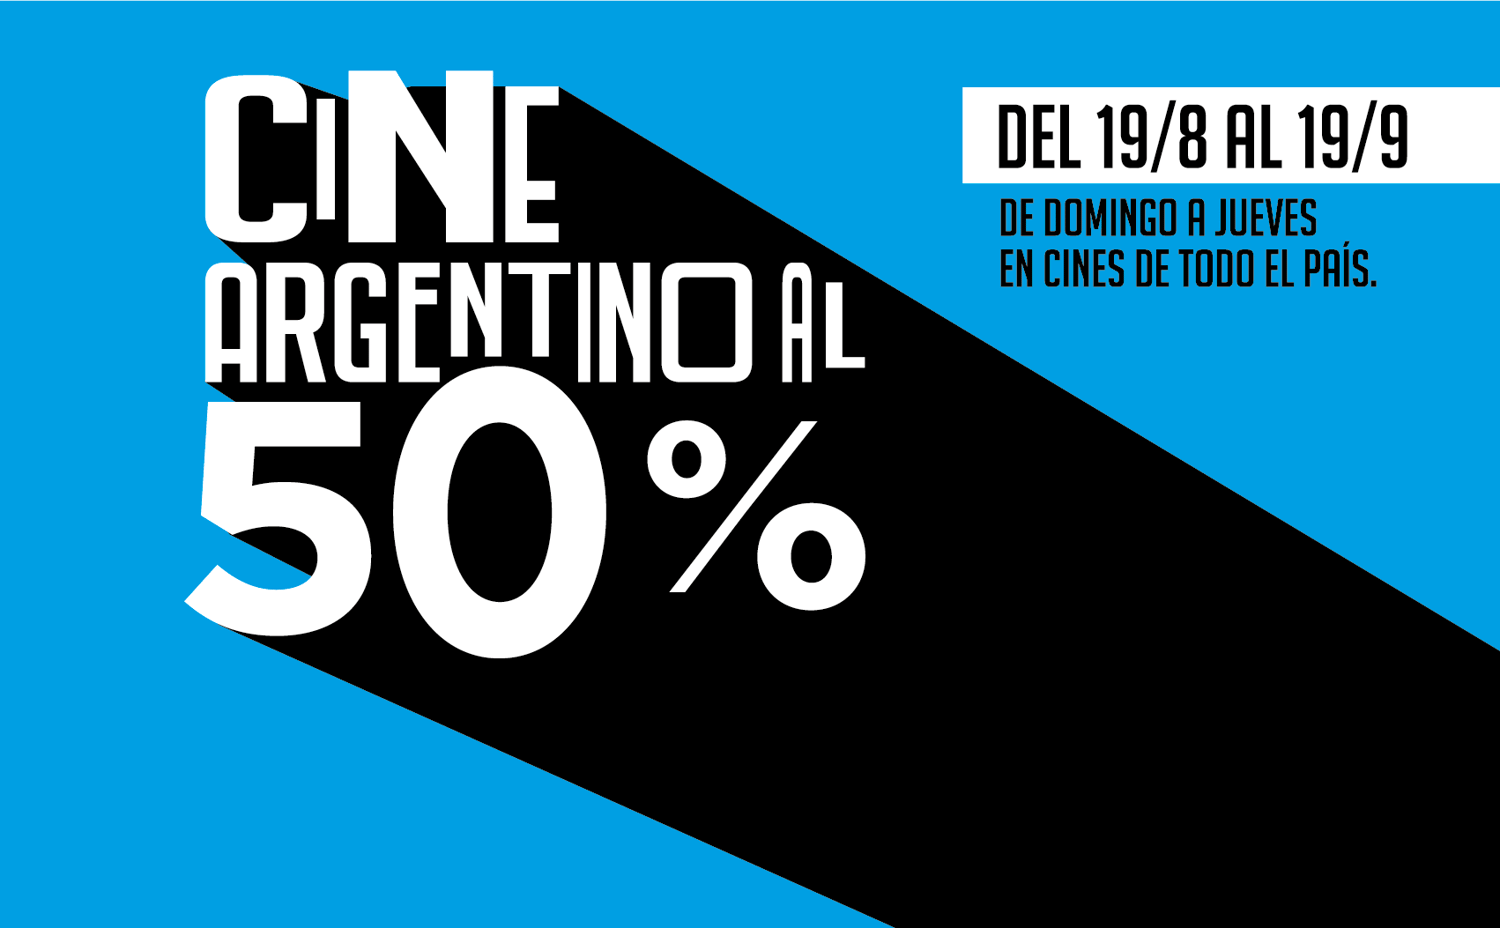 Mes del Cine argentino: De domingo a jueves proyectan películas nacionales al 50%